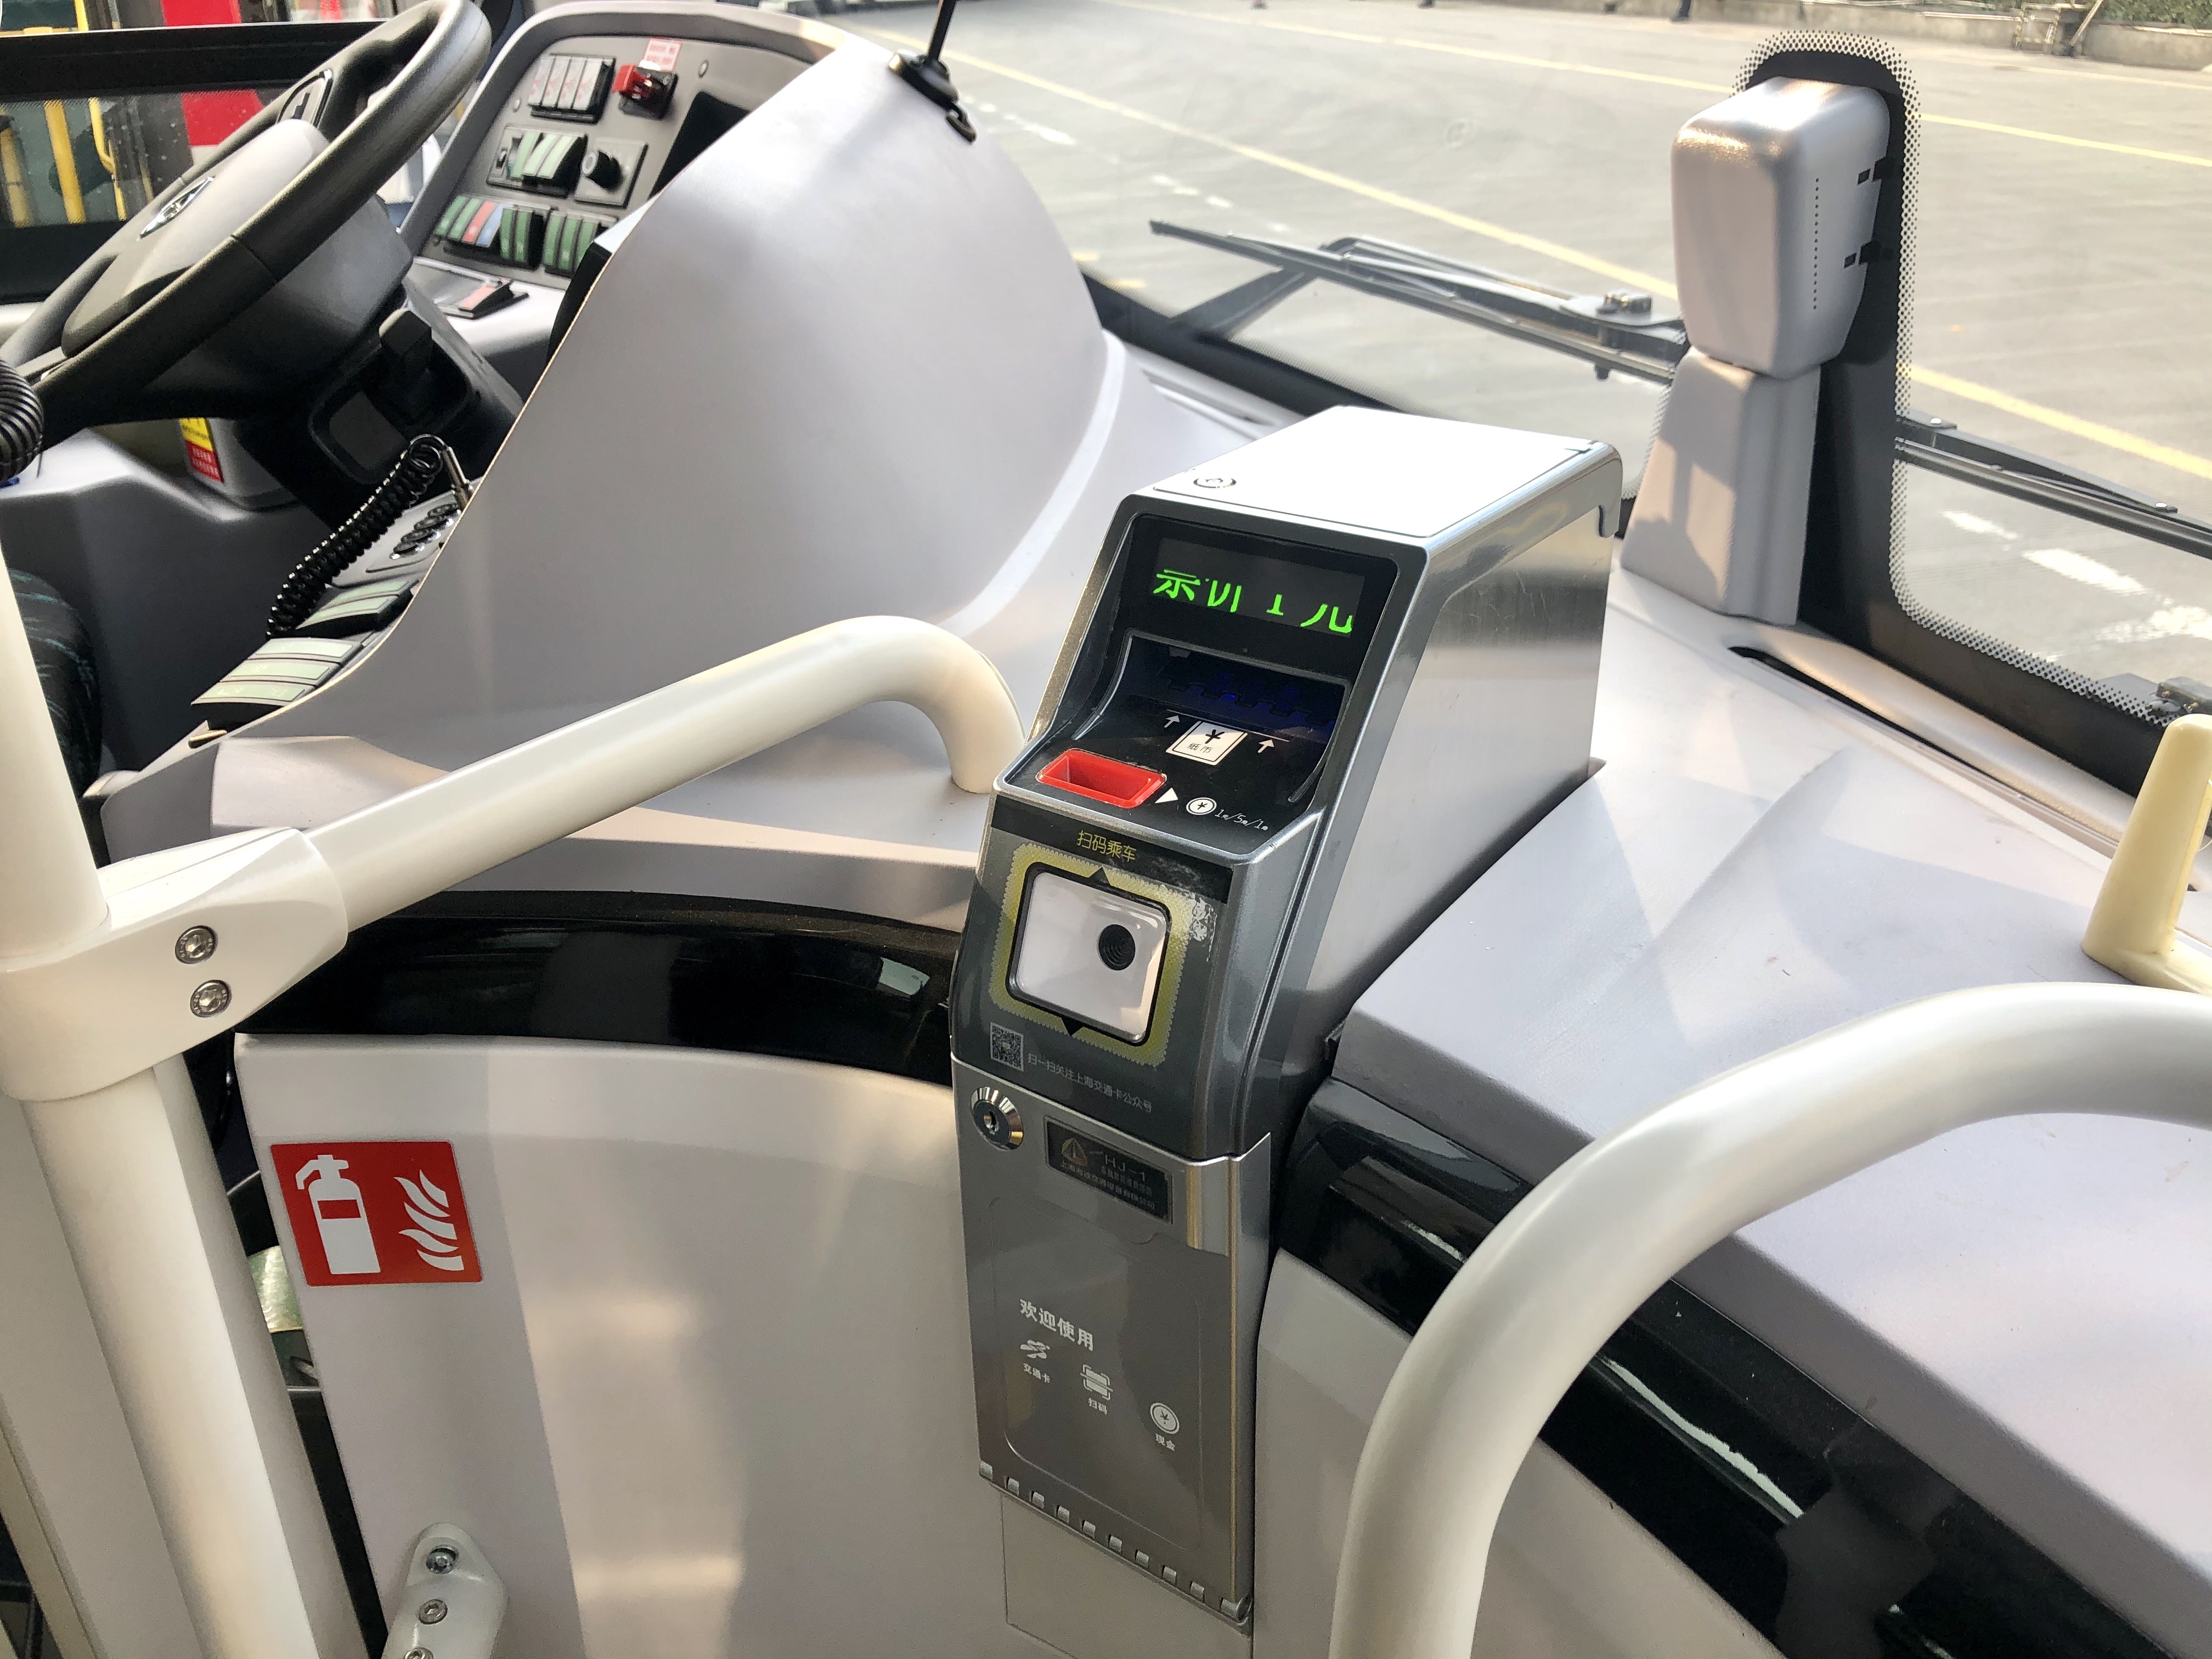 作为松江公交采购的第一批低地板新能源公交车,智能化的配置是新车型